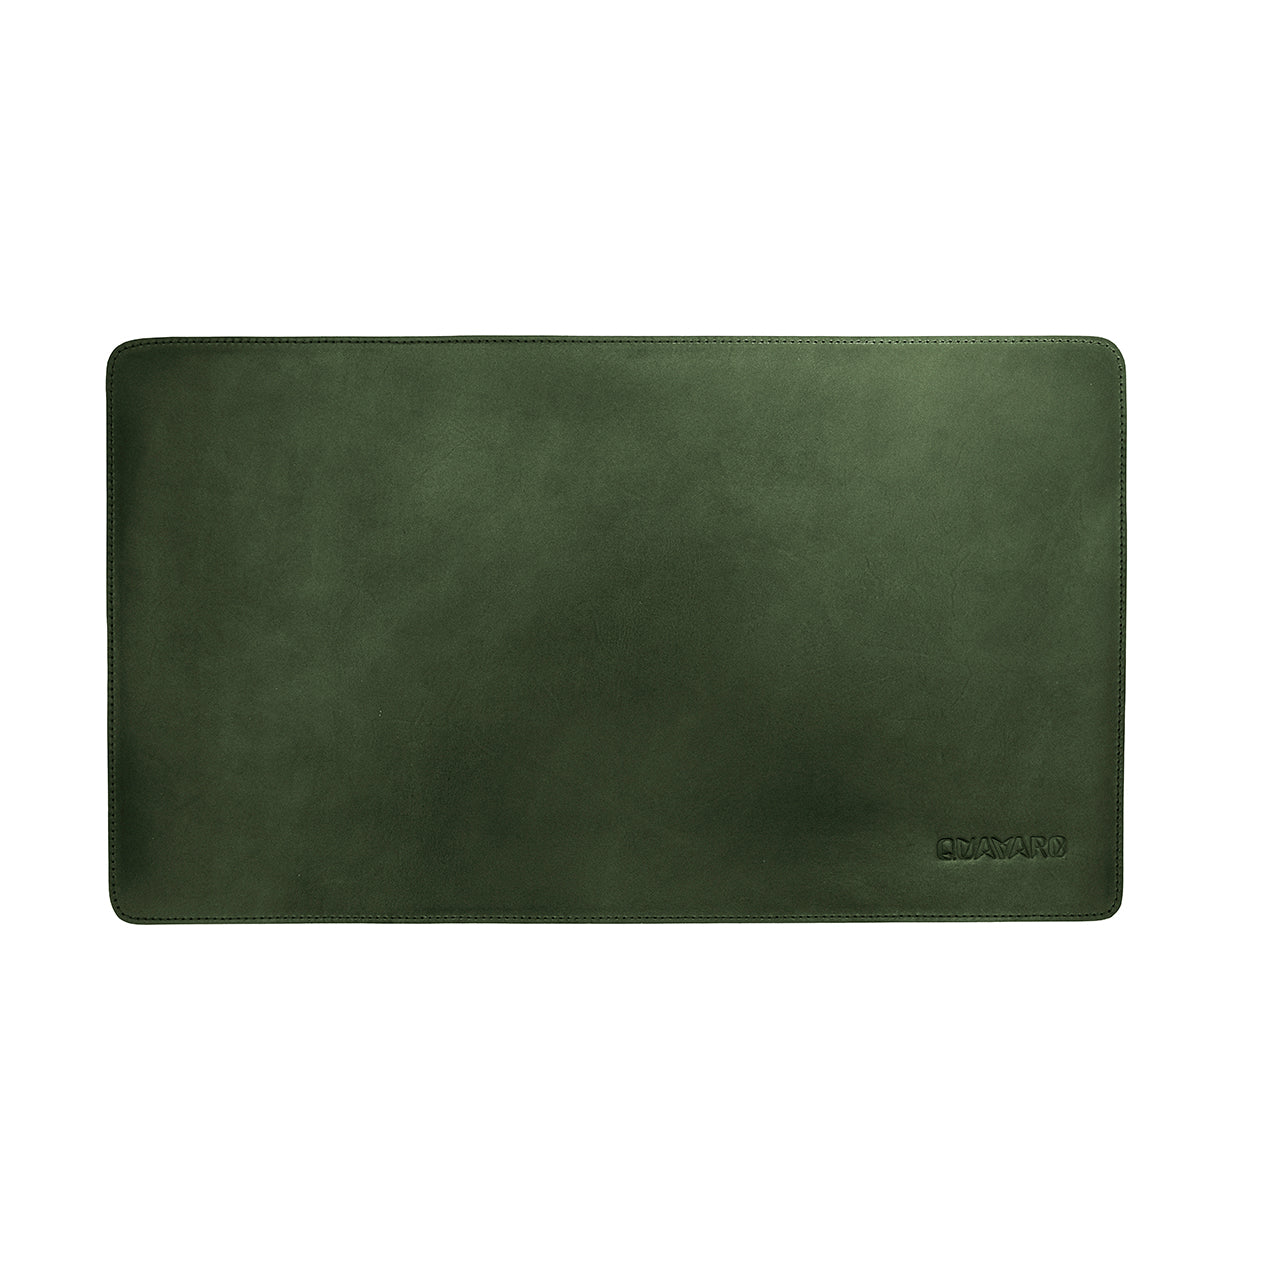 Leather-Desk-Pad-Quavaro.com